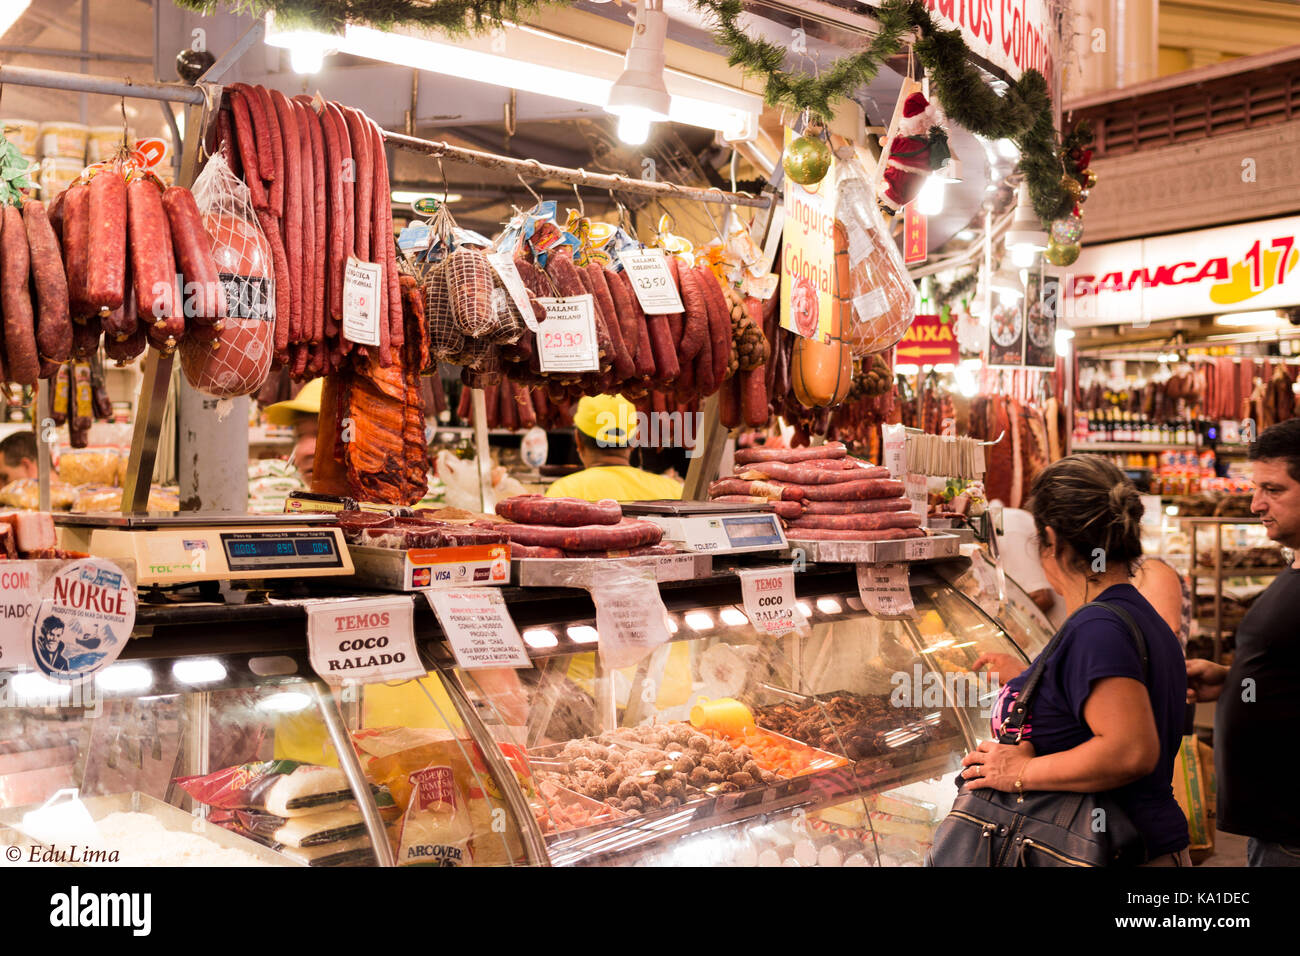 Marché public brésilien vend toutes sortes de boeuf, viande de porc, saucisses, pièces de poulet et beaucoup plus d'épicerie Banque D'Images